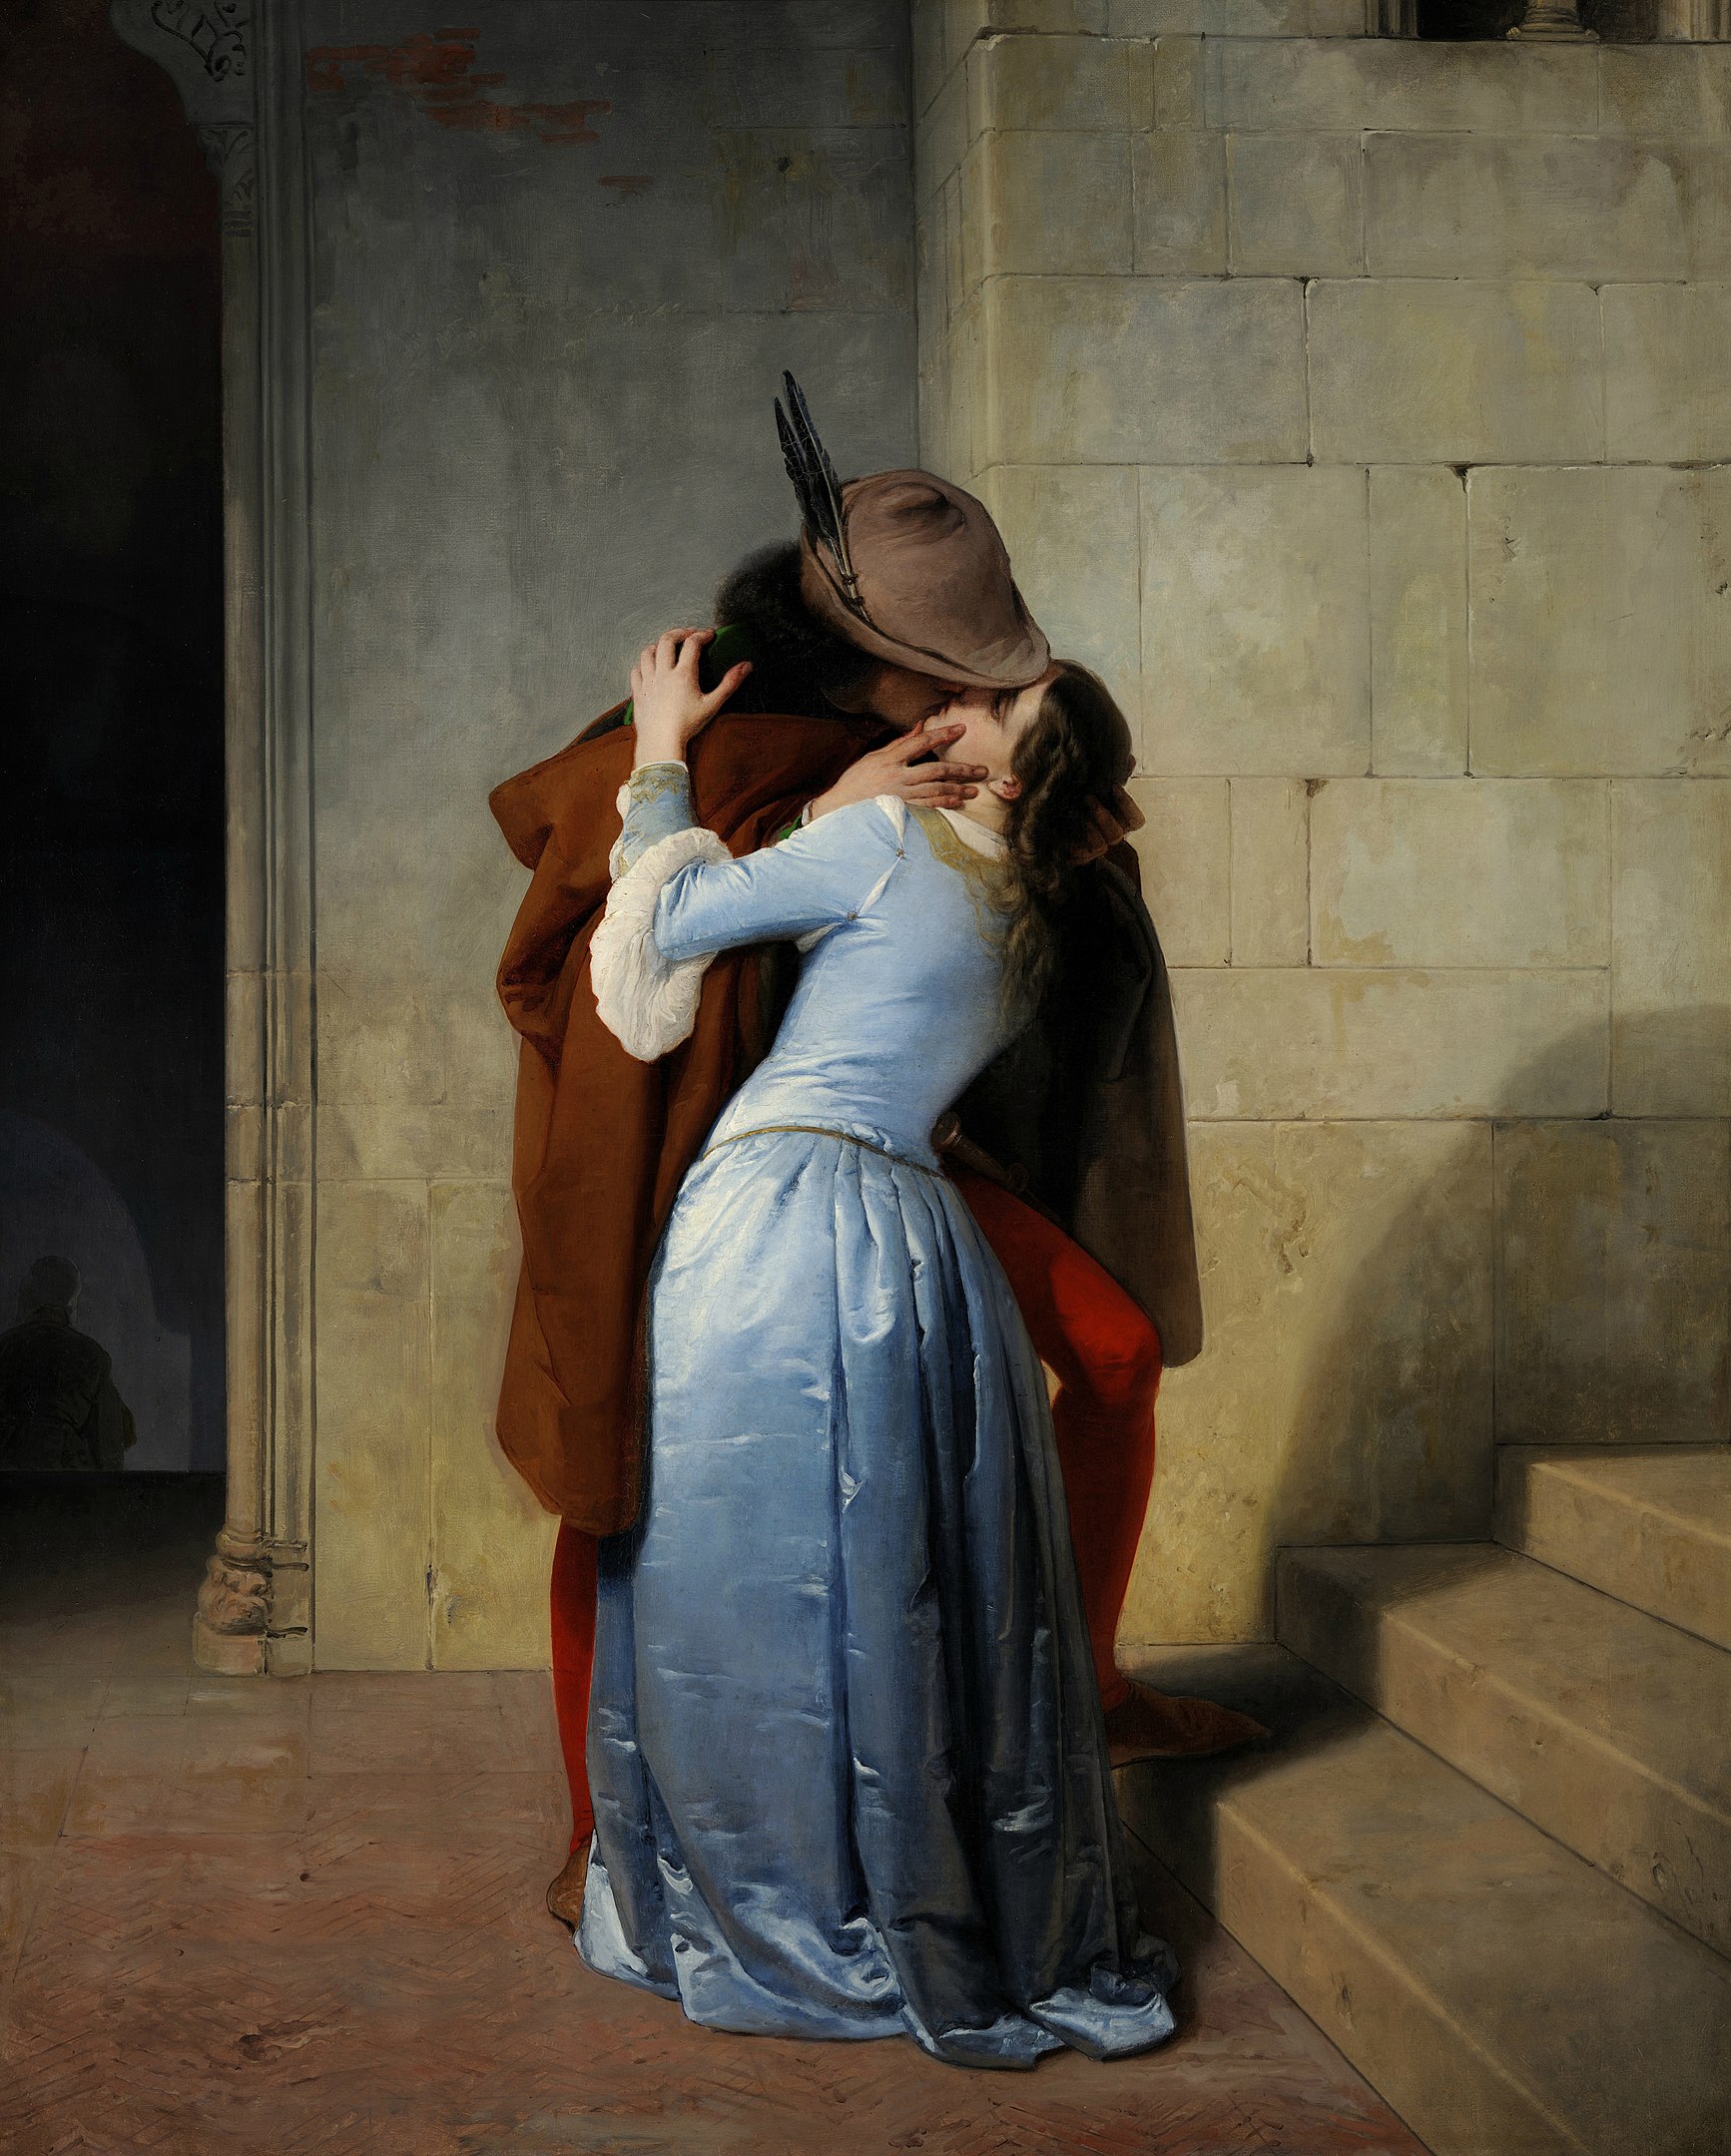 Le baiser by Francesco Hayez - 1859 - 110 cm × 88 cm 